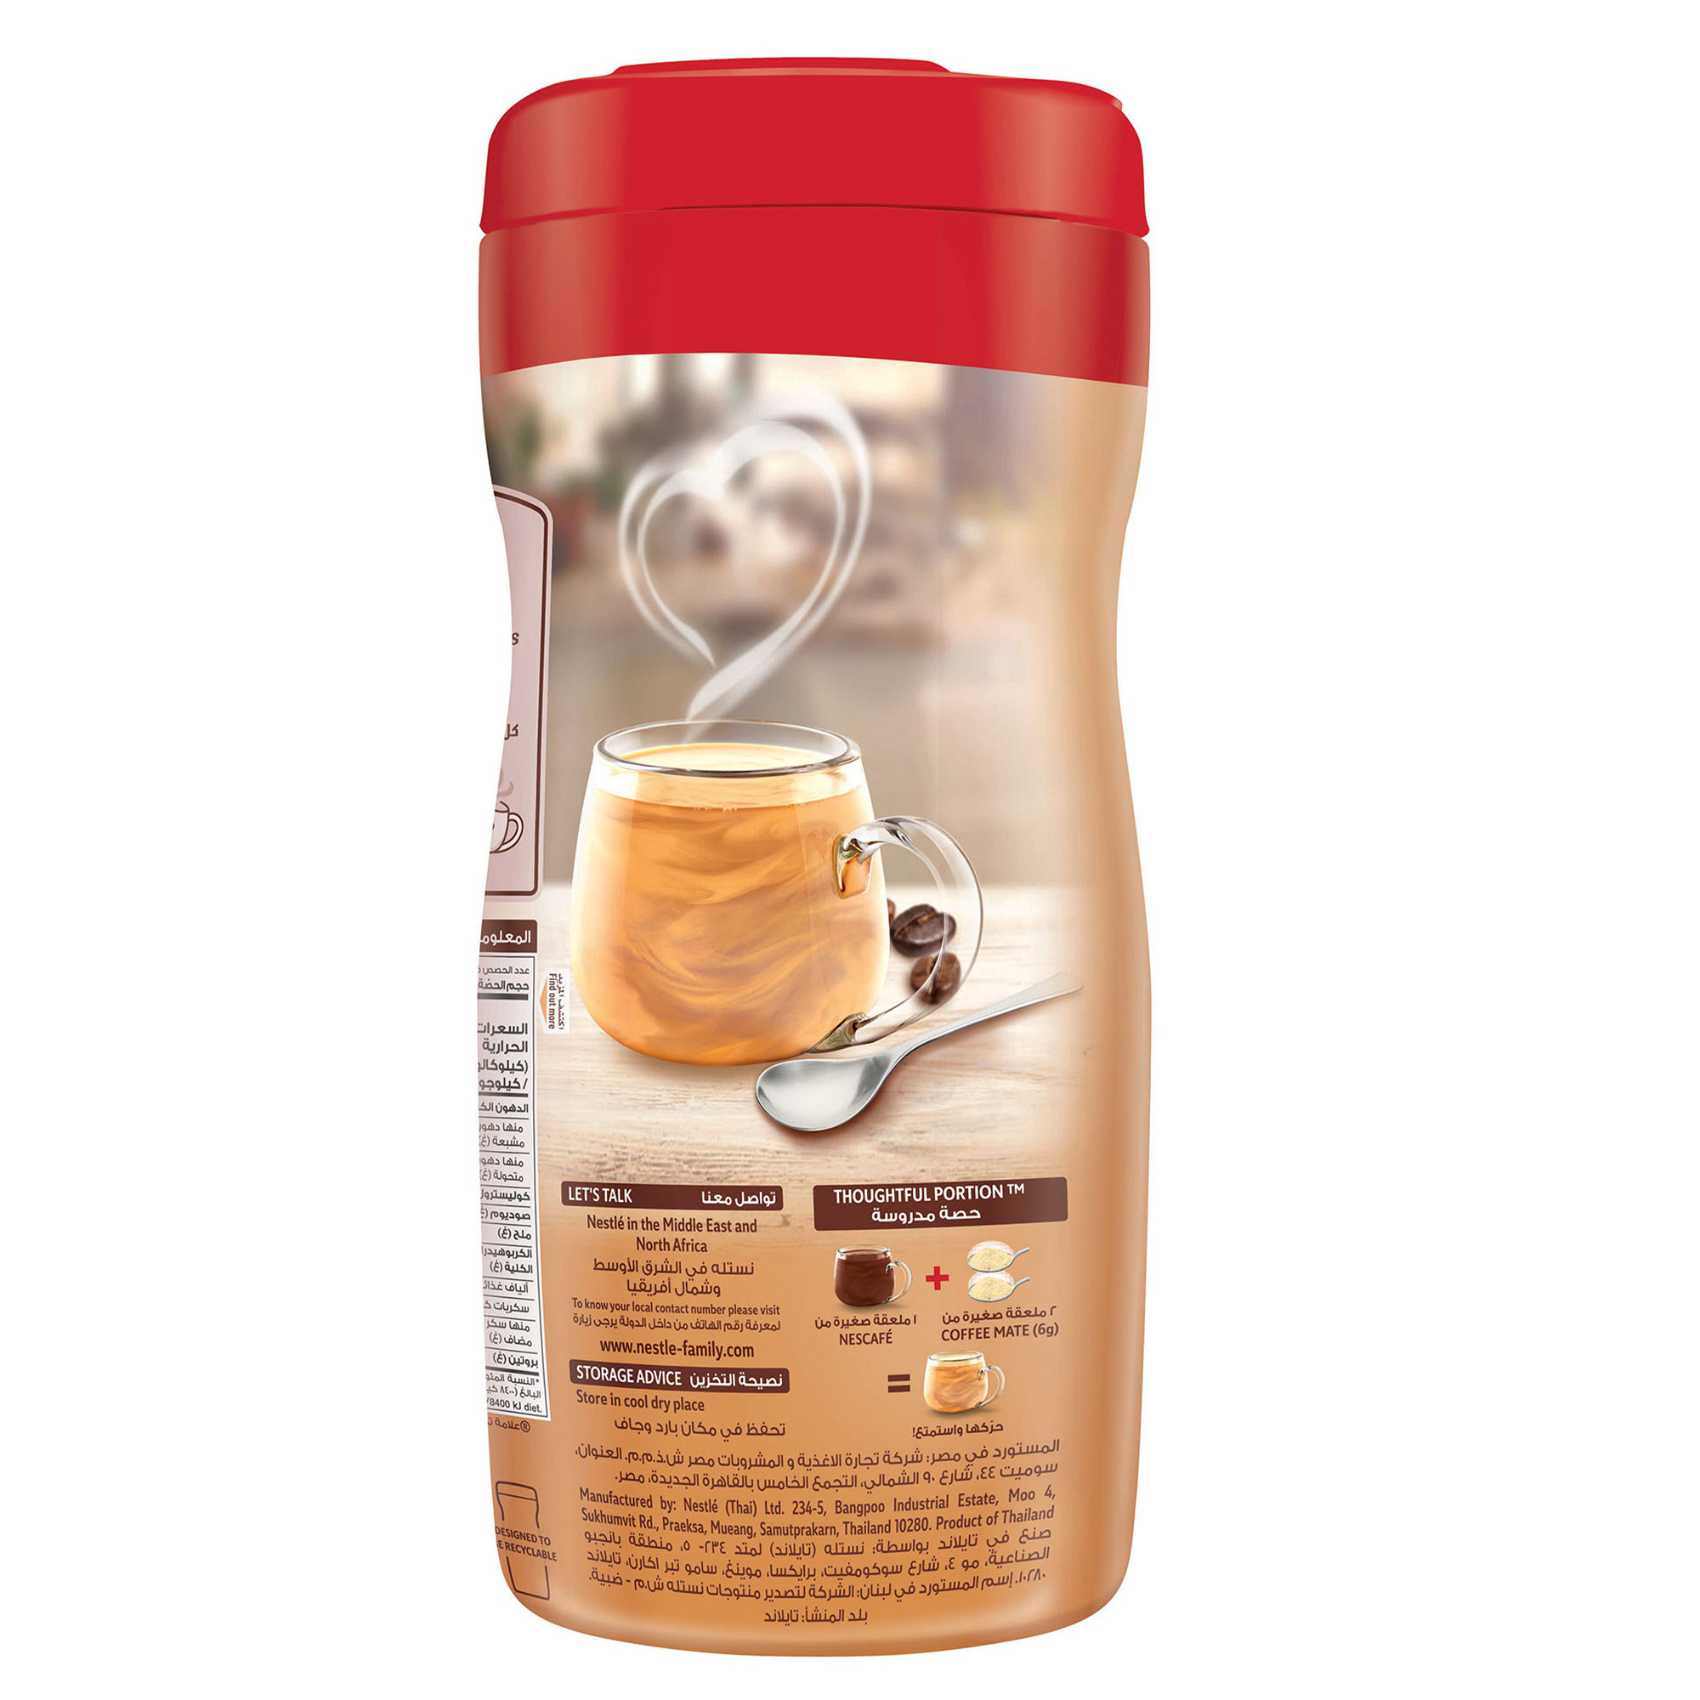 نيستله كوفي ميت كريمة القهوة غير الحليبية الأصلية 170 غرام